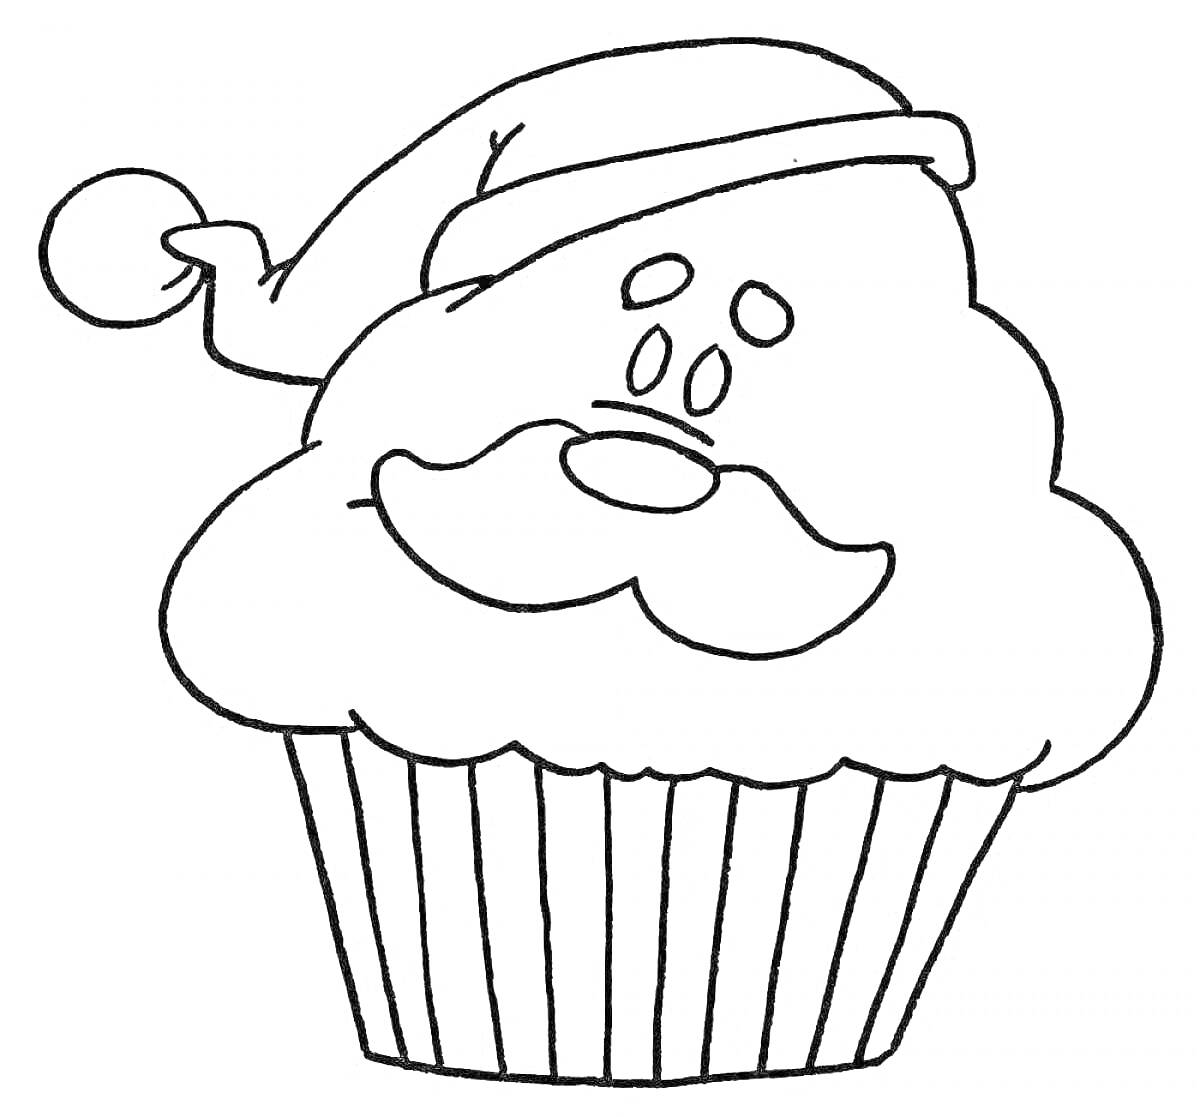 Раскраска Кекс в новогодней шапке с усами и лицом